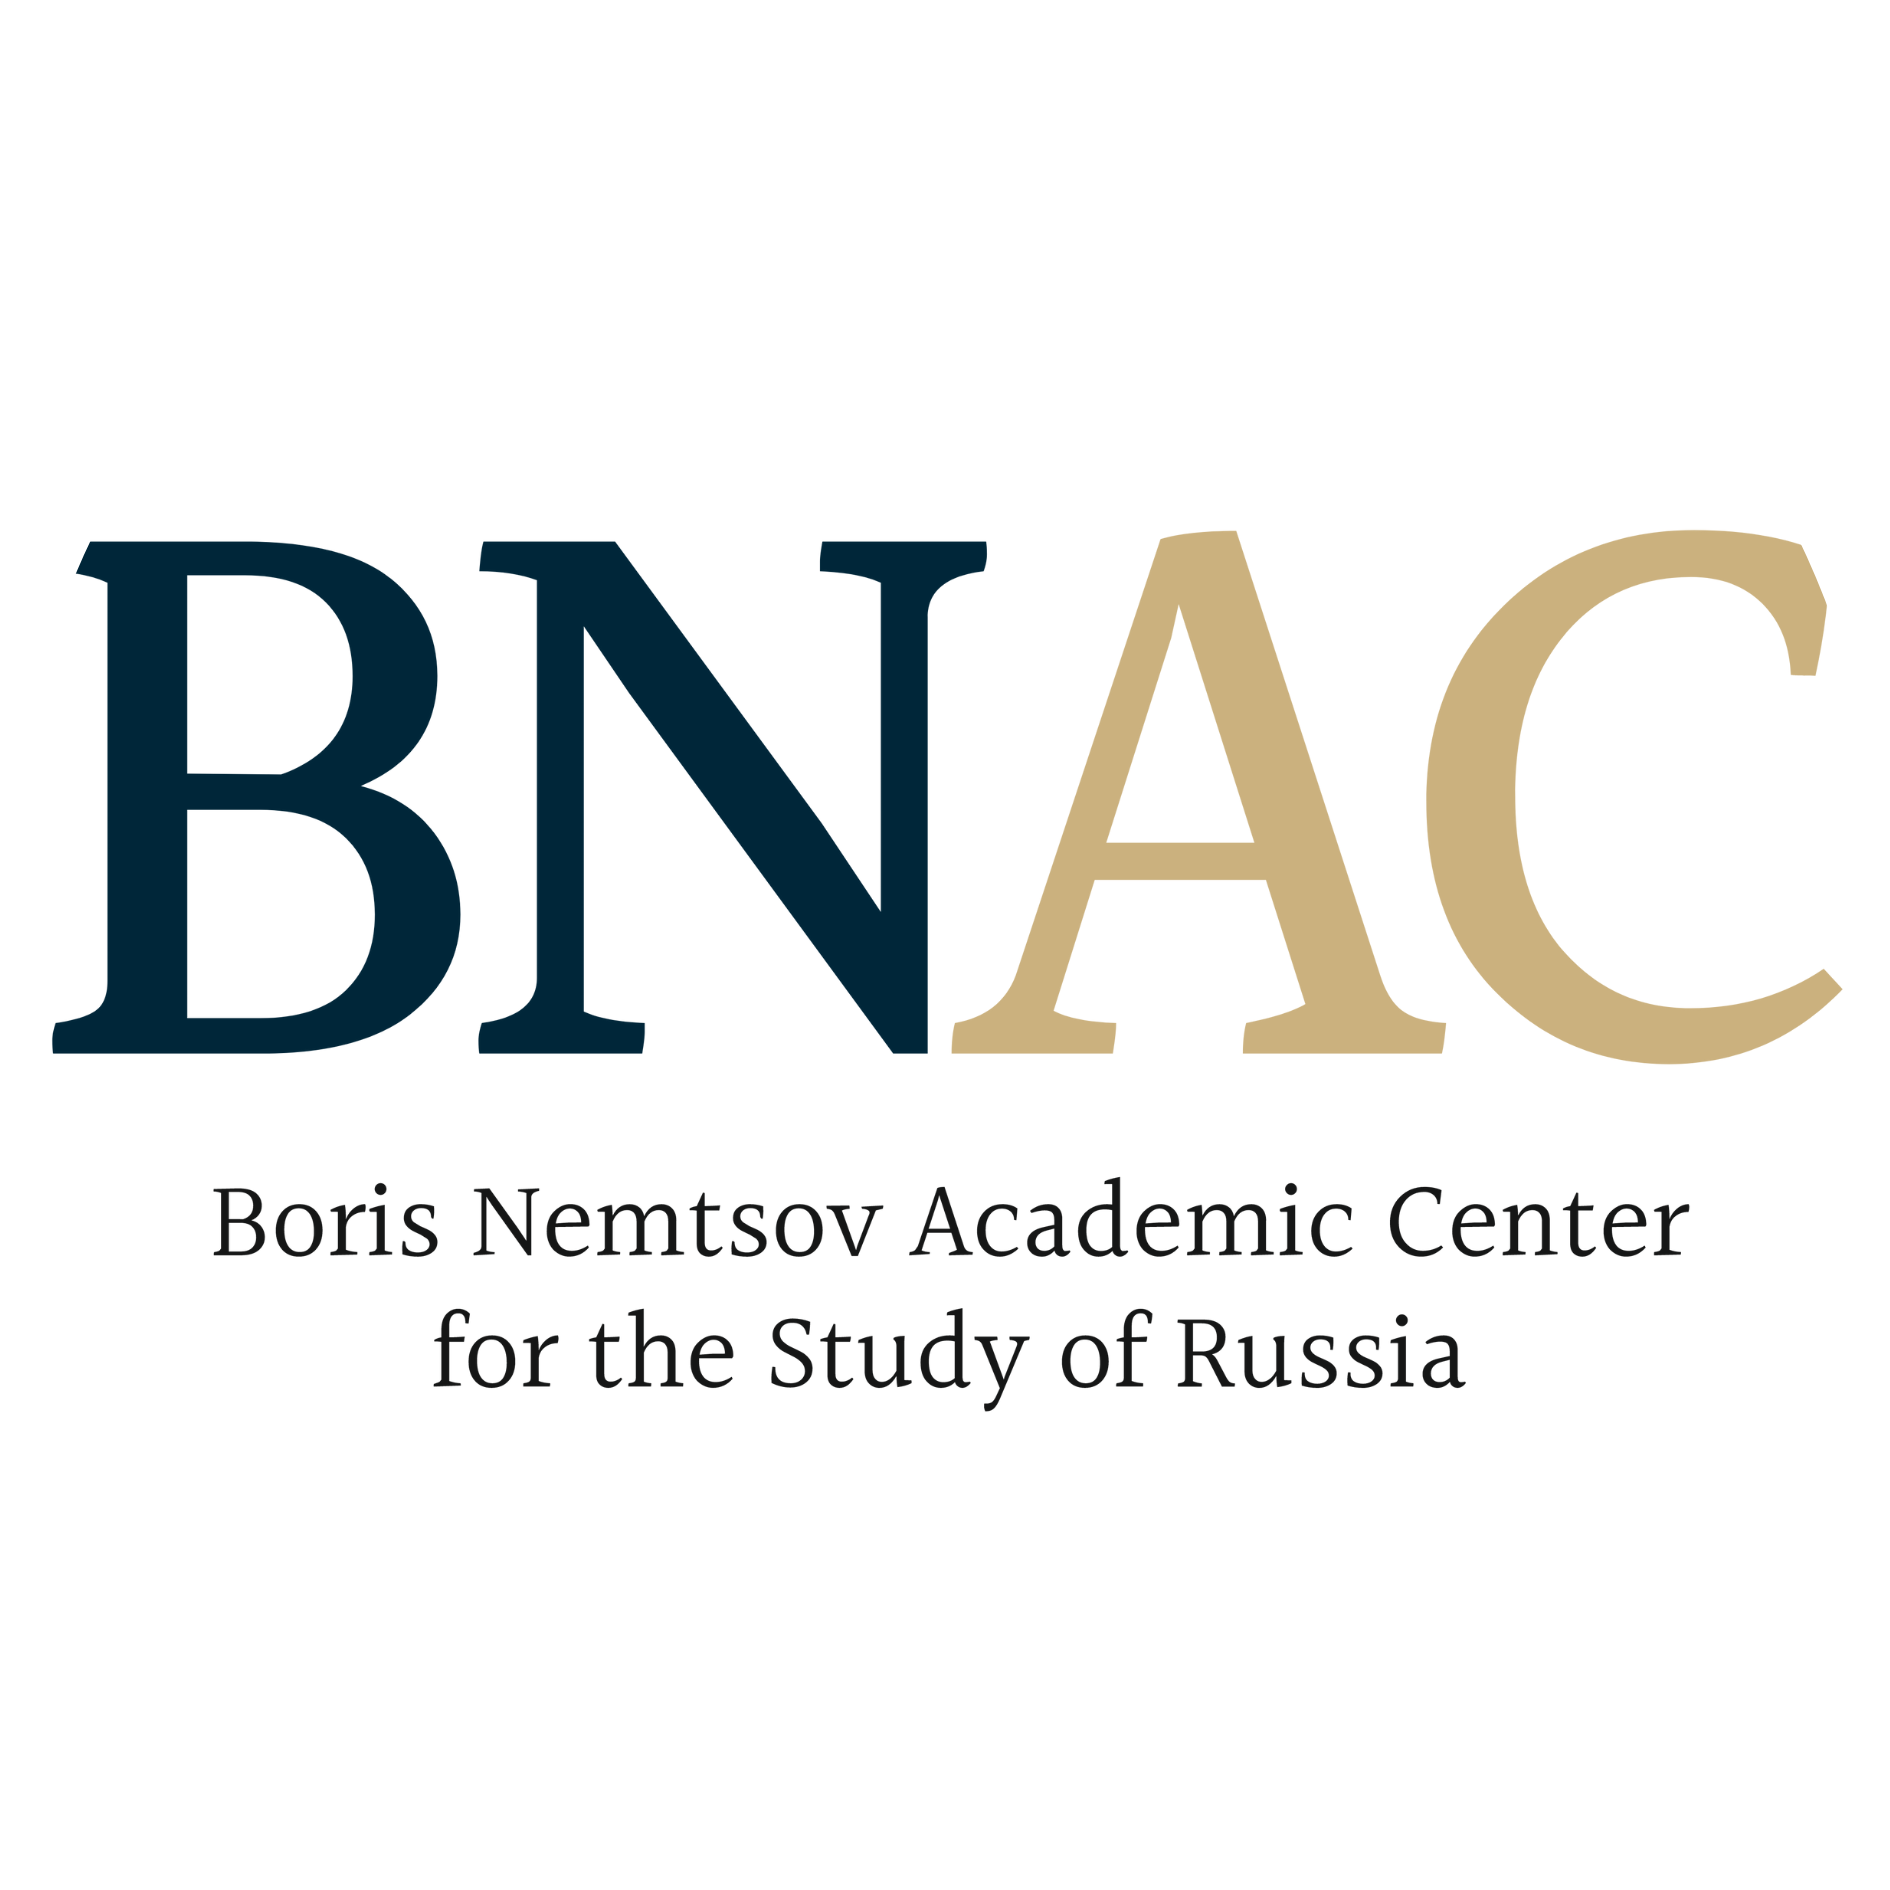 Академический центр Бориса Немцова по изучению России